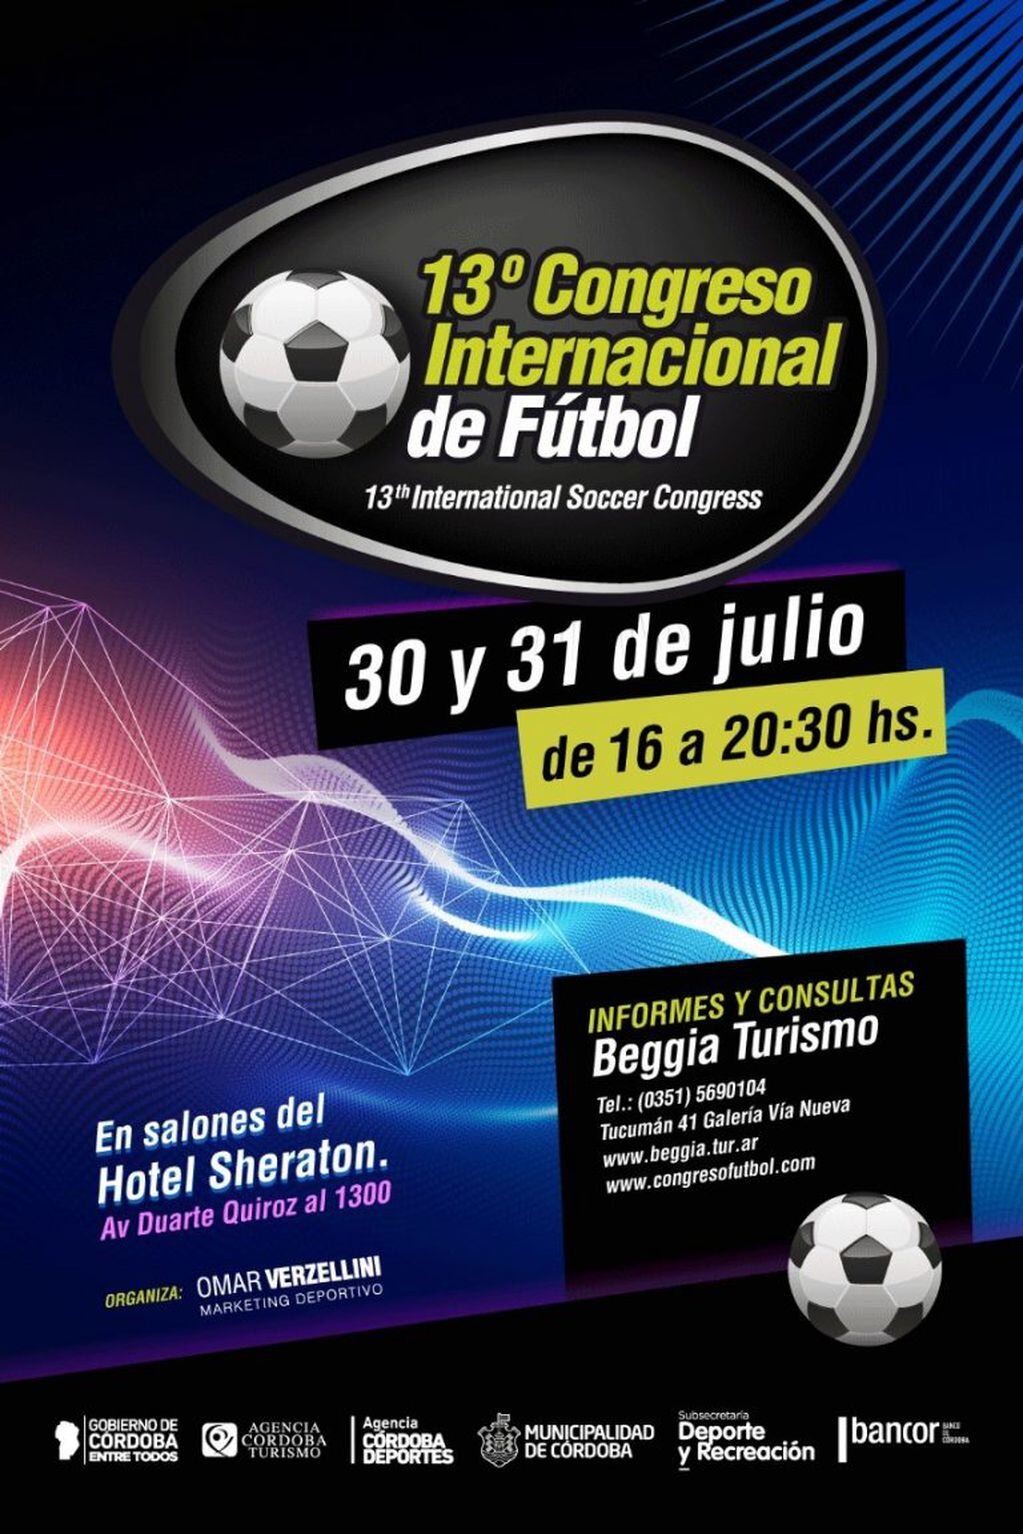 Una vez más el Congreso atrapará el interés de los fútboleros de Córdoba y provincias vecinas.